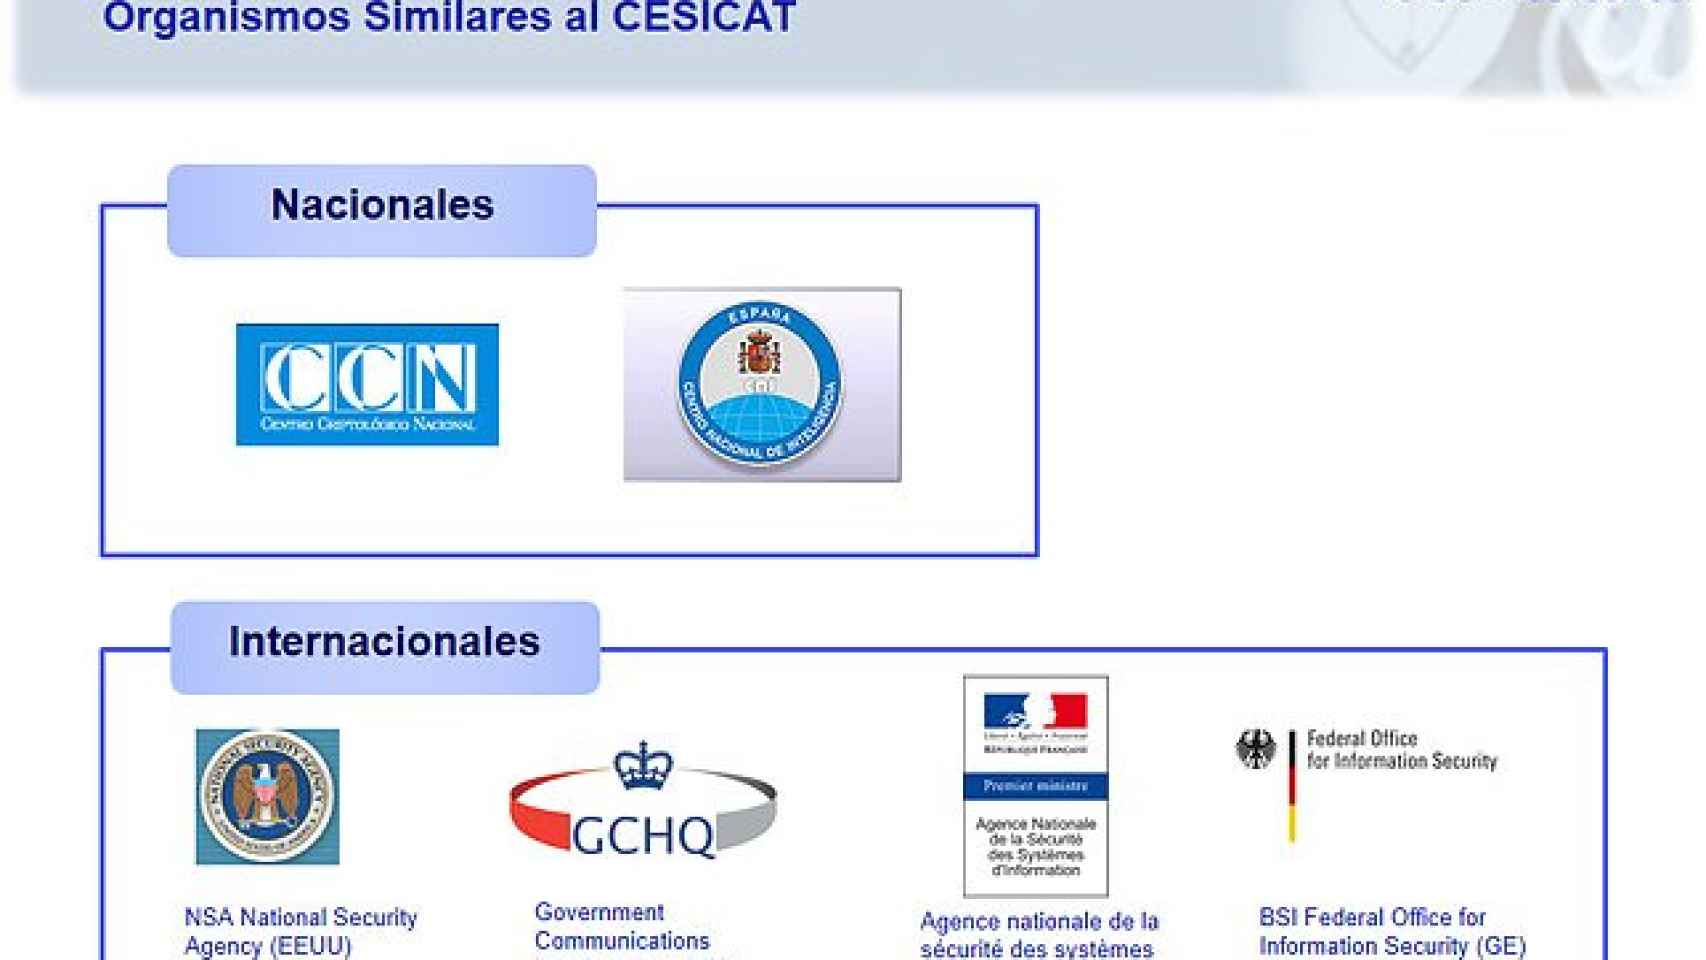 Detalle del informe encargado a la empresa Solium por parte de la Generalidad para que concrete el plan estratégico del Cesicat